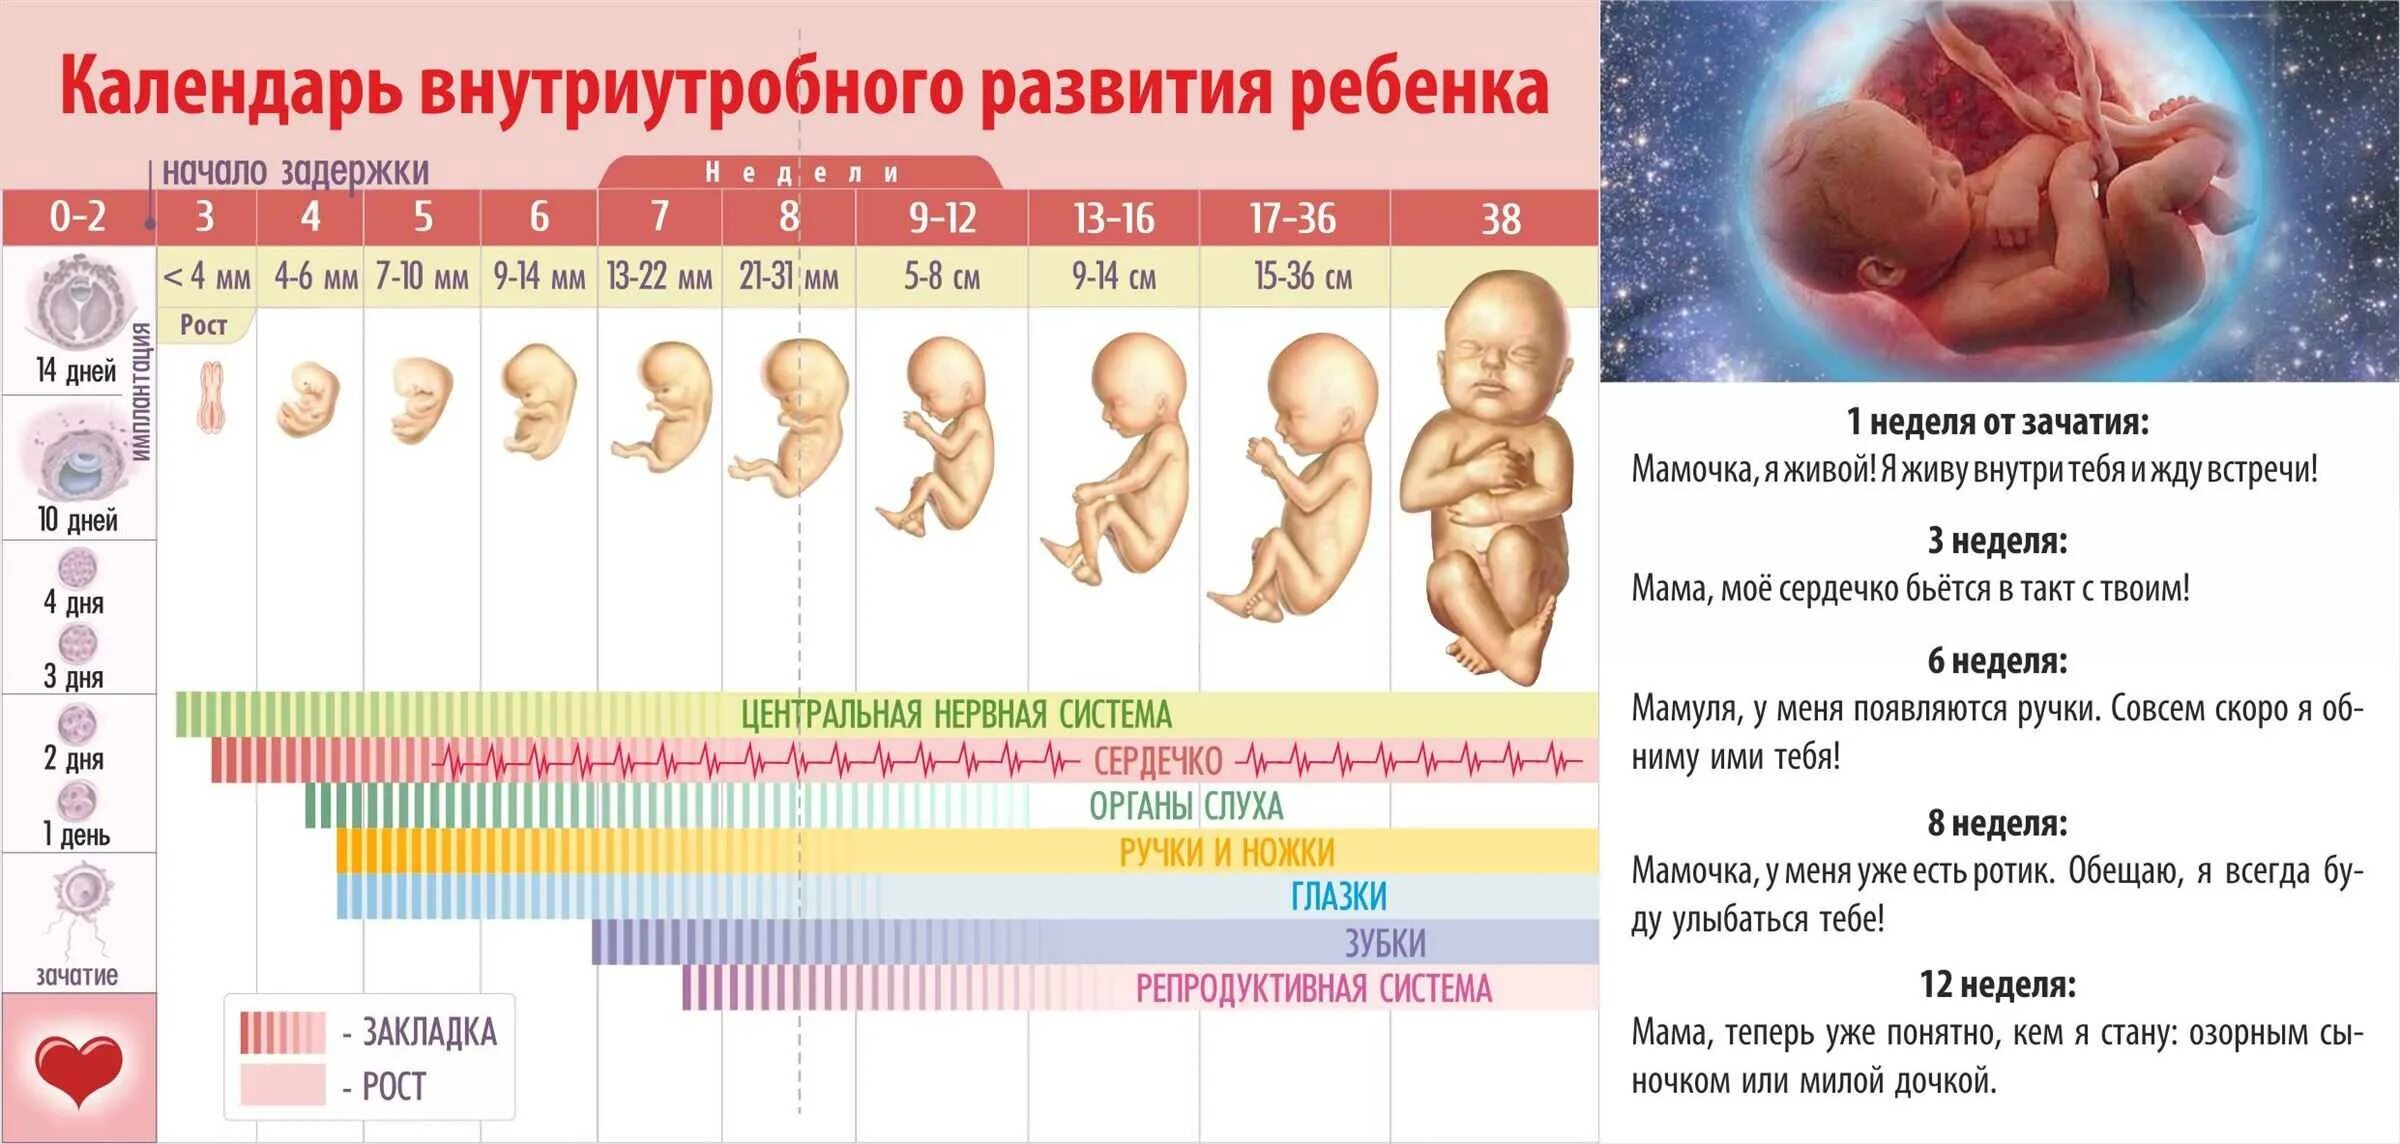 Акушерские и эмбриональные недели. Периоды внутриутробного развития плода и эмбриона. Периоды формирования плода по неделям беременности. Формирование ребенка по неделям беременности фото плода по неделям. Стадии развития ребенка в утробе матери.